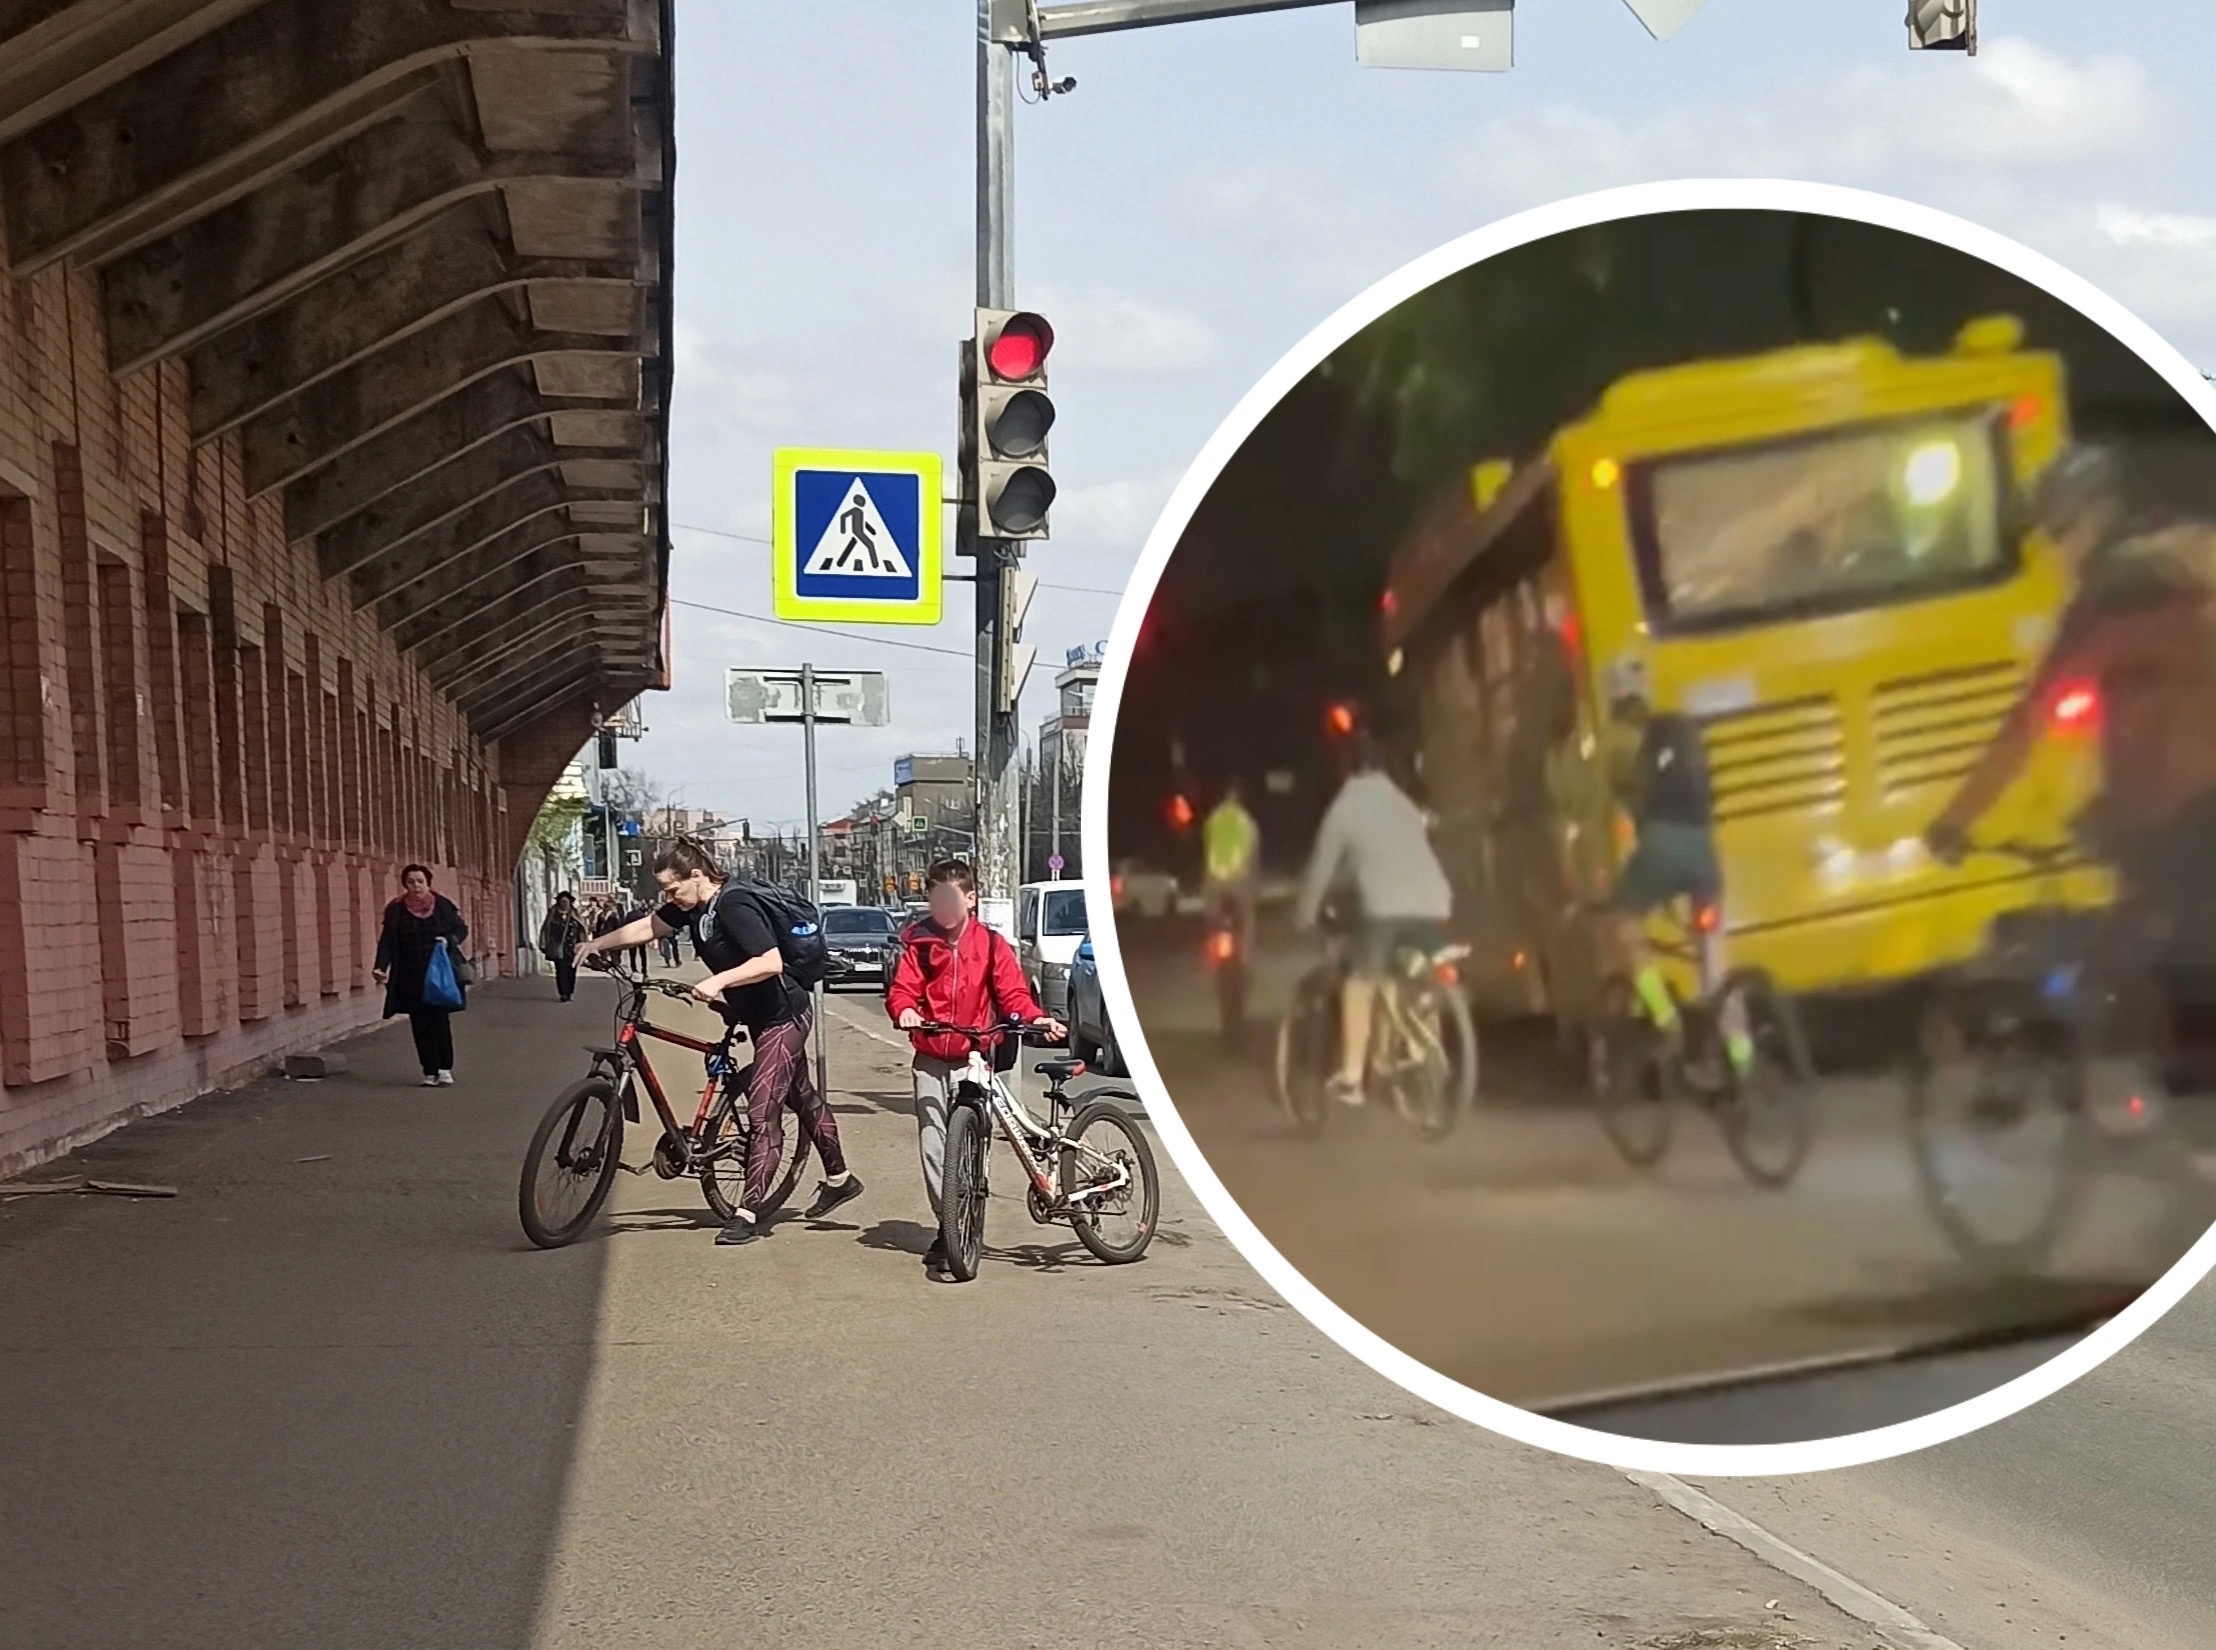 Ярославцы возмущены нашествием велосипедистов на дорогах